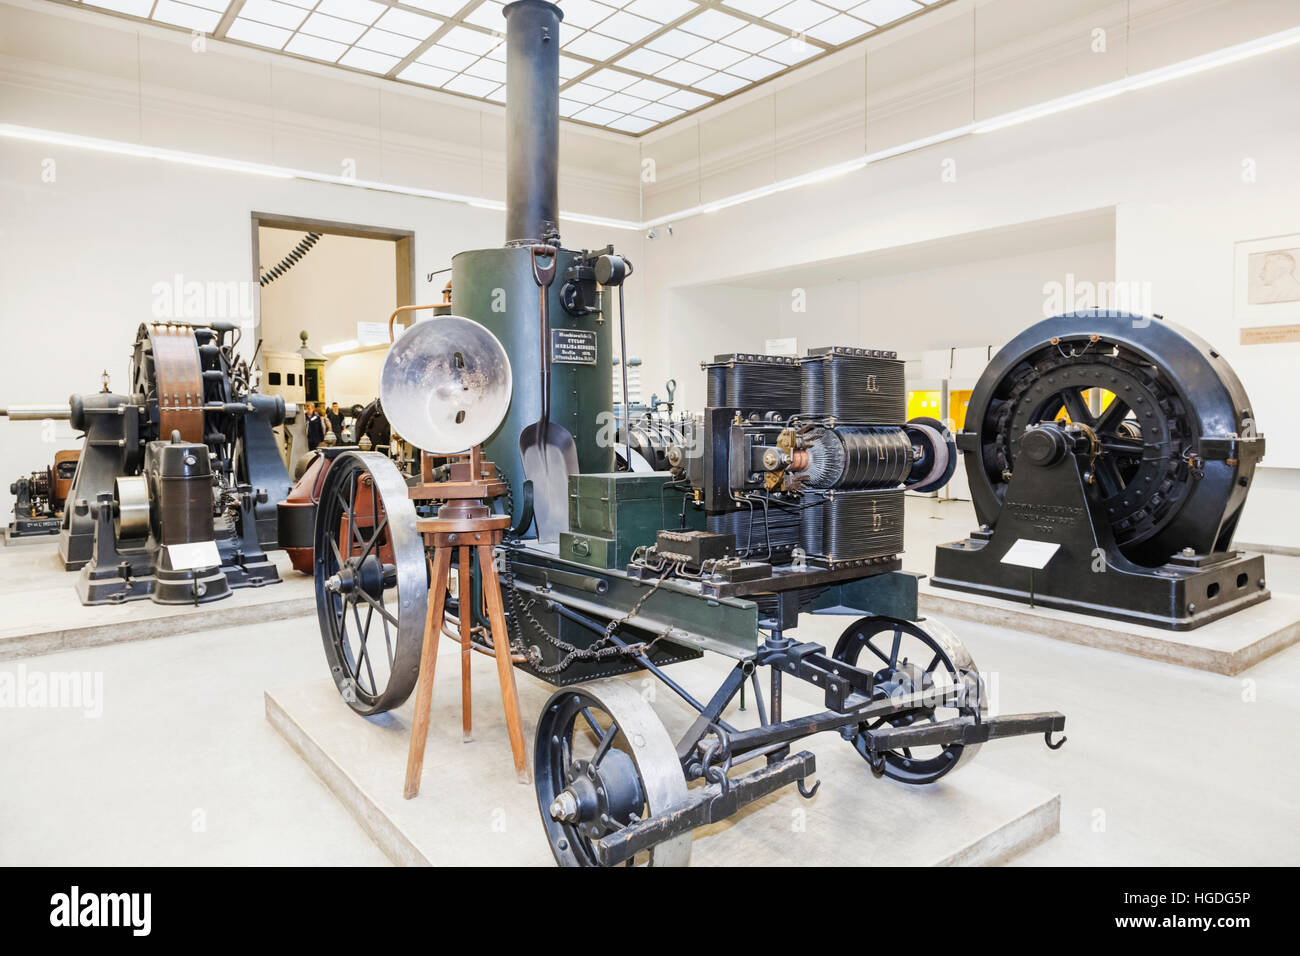 Germany, Bavaria, Munich, Deutsches Museum, Exhibit of Historical Siemens & Halske Illumination Carriage dated 1878 Stock Photo